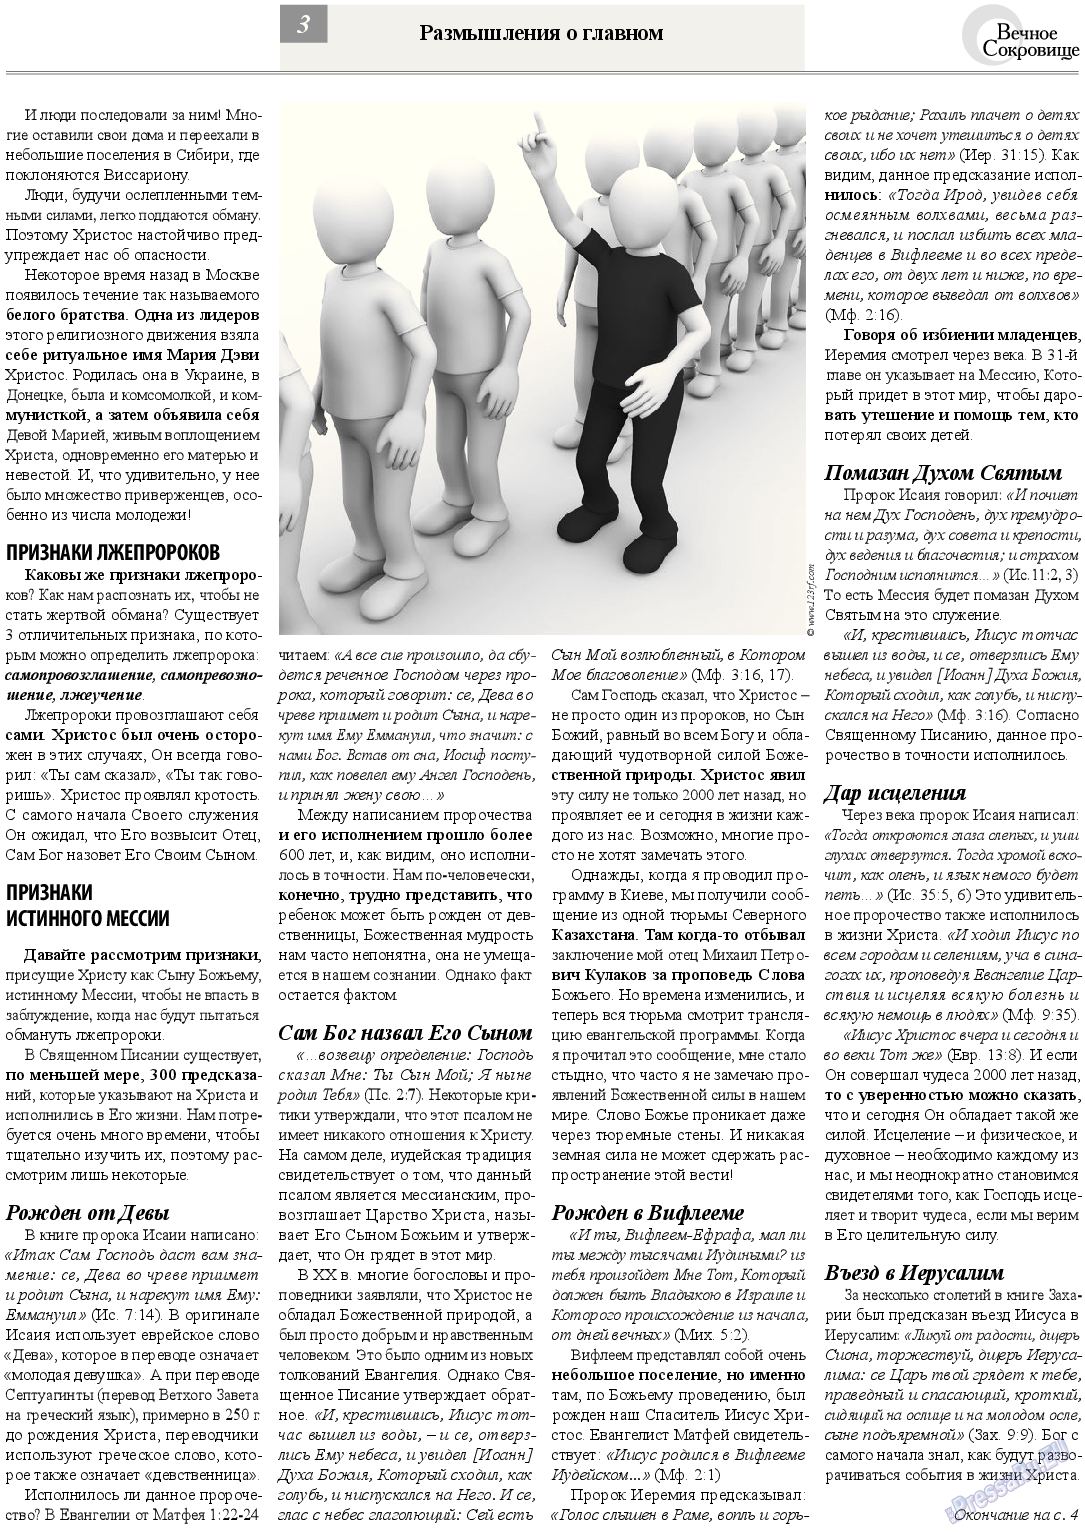 Вечное сокровище, газета. 2013 №4 стр.3